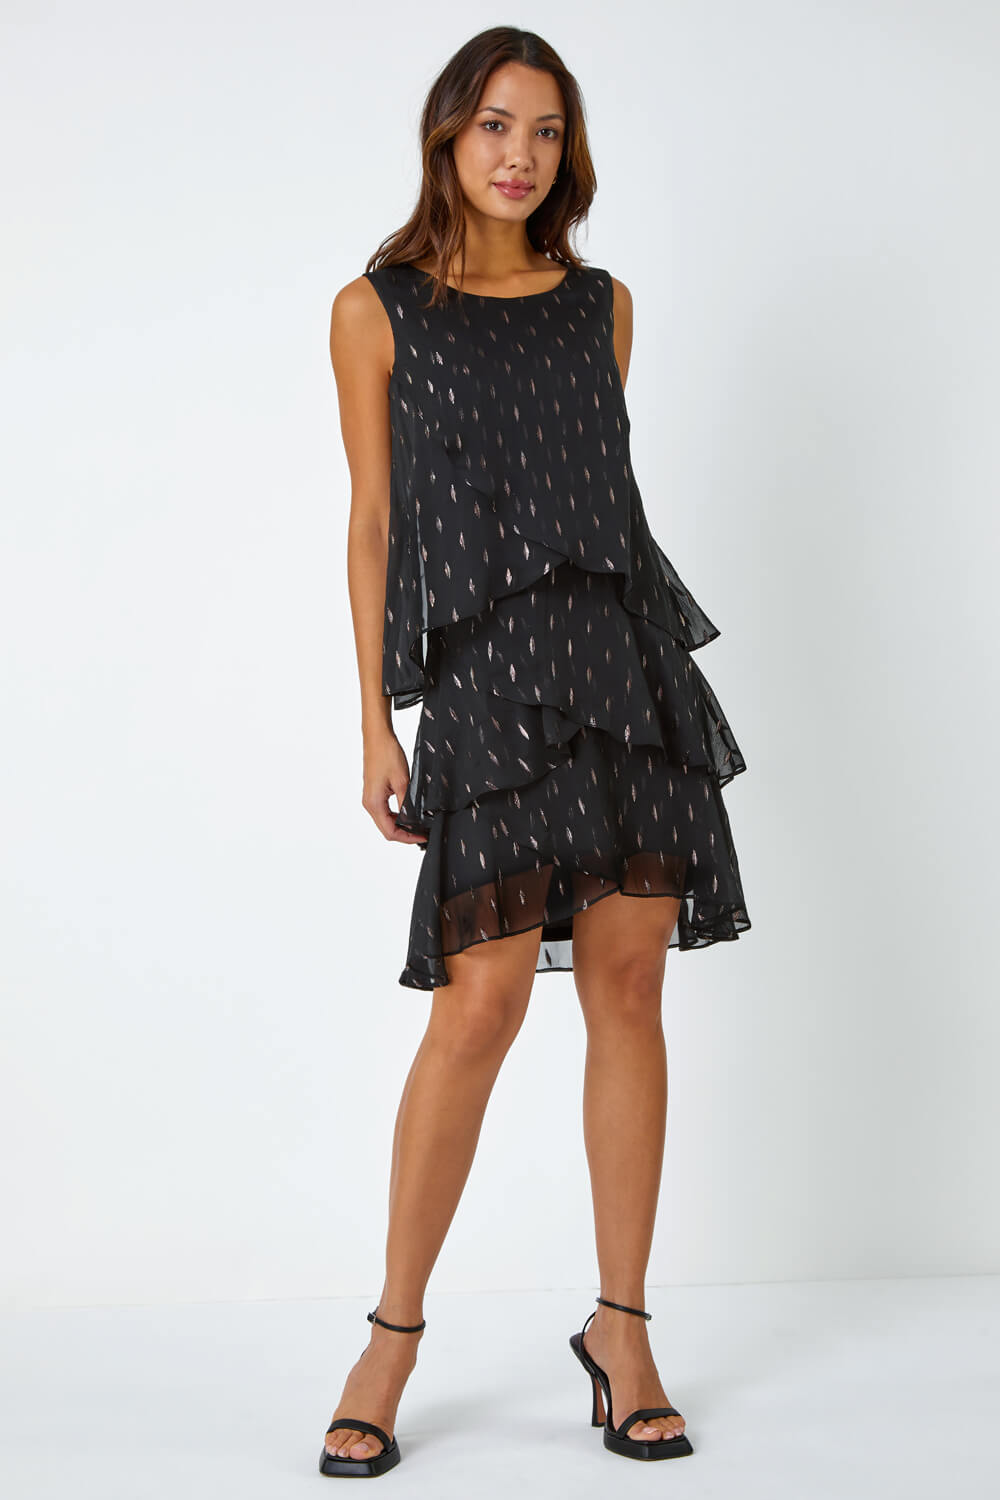 Black Shimmer Foil Print Tiered Dress, Image 2 of 5